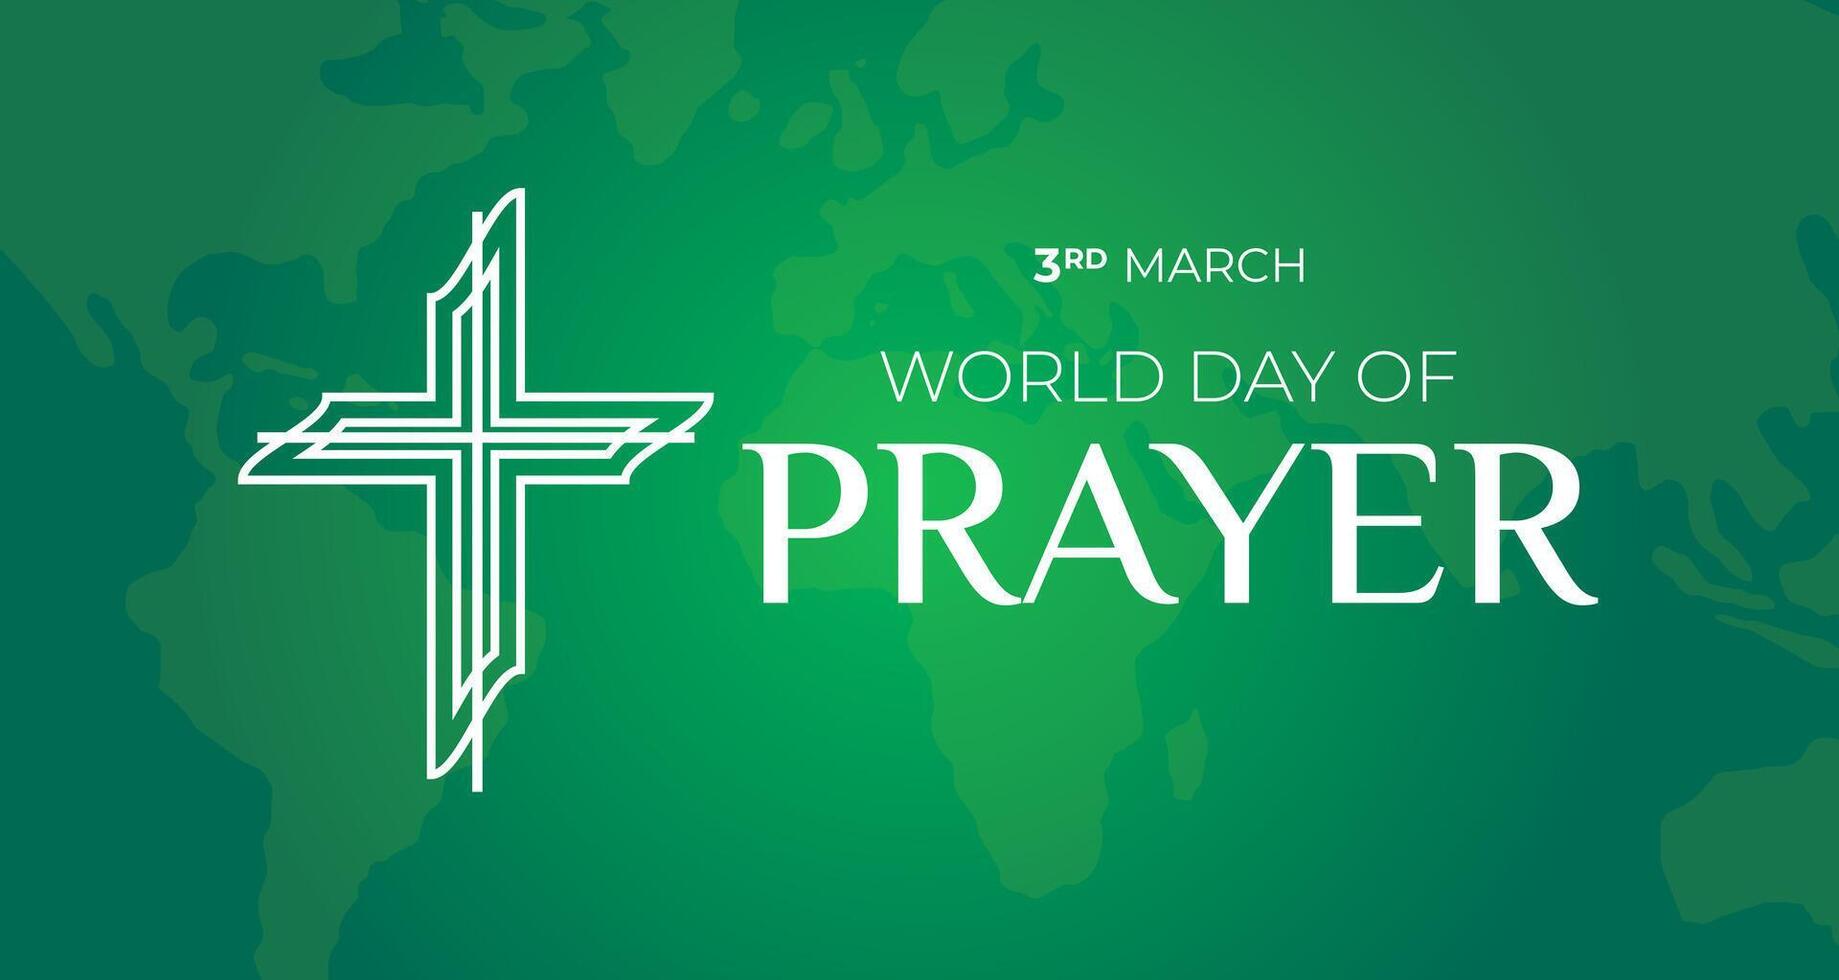 Welt Tag von Gebet Illustration mit Kreuz vektor